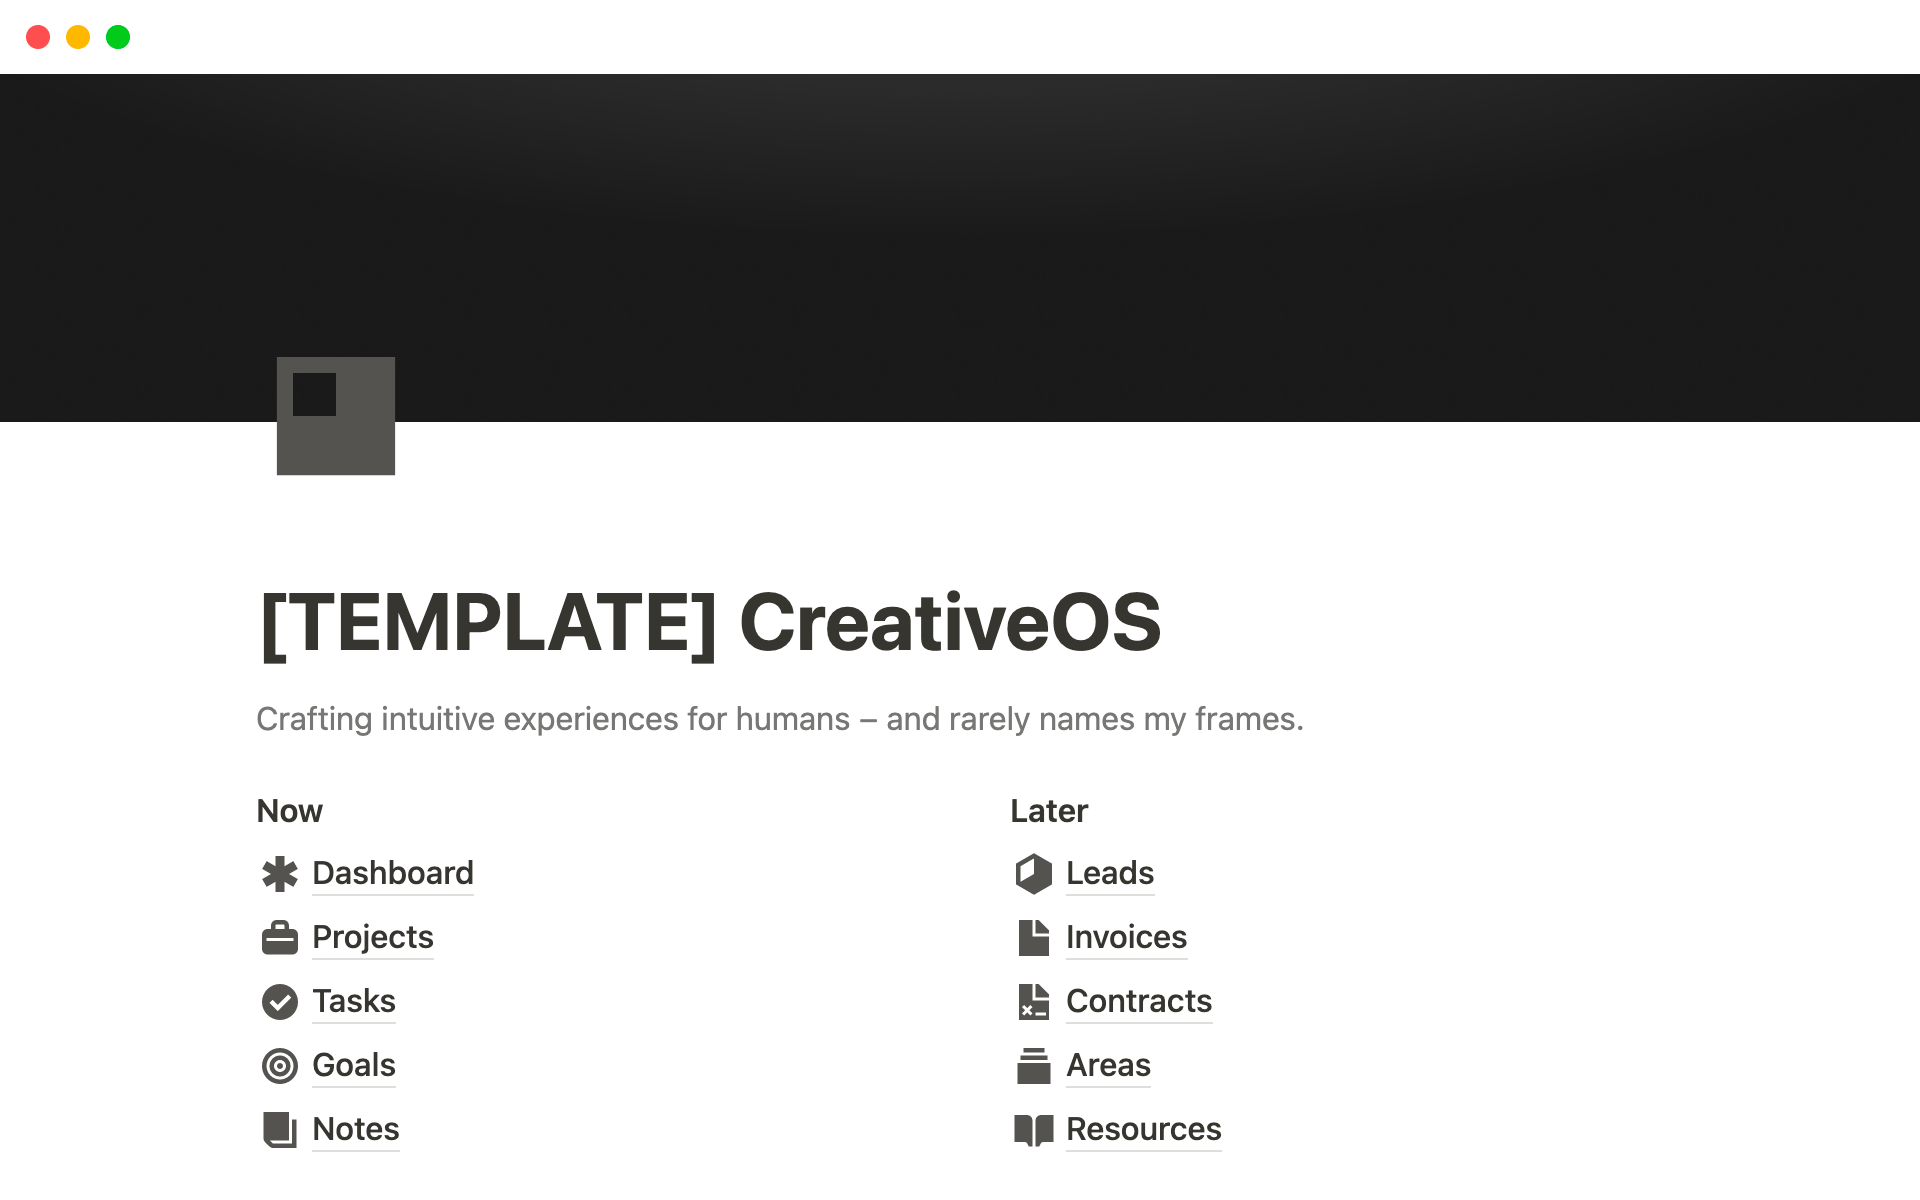 Vista previa de una plantilla para CreativeOS